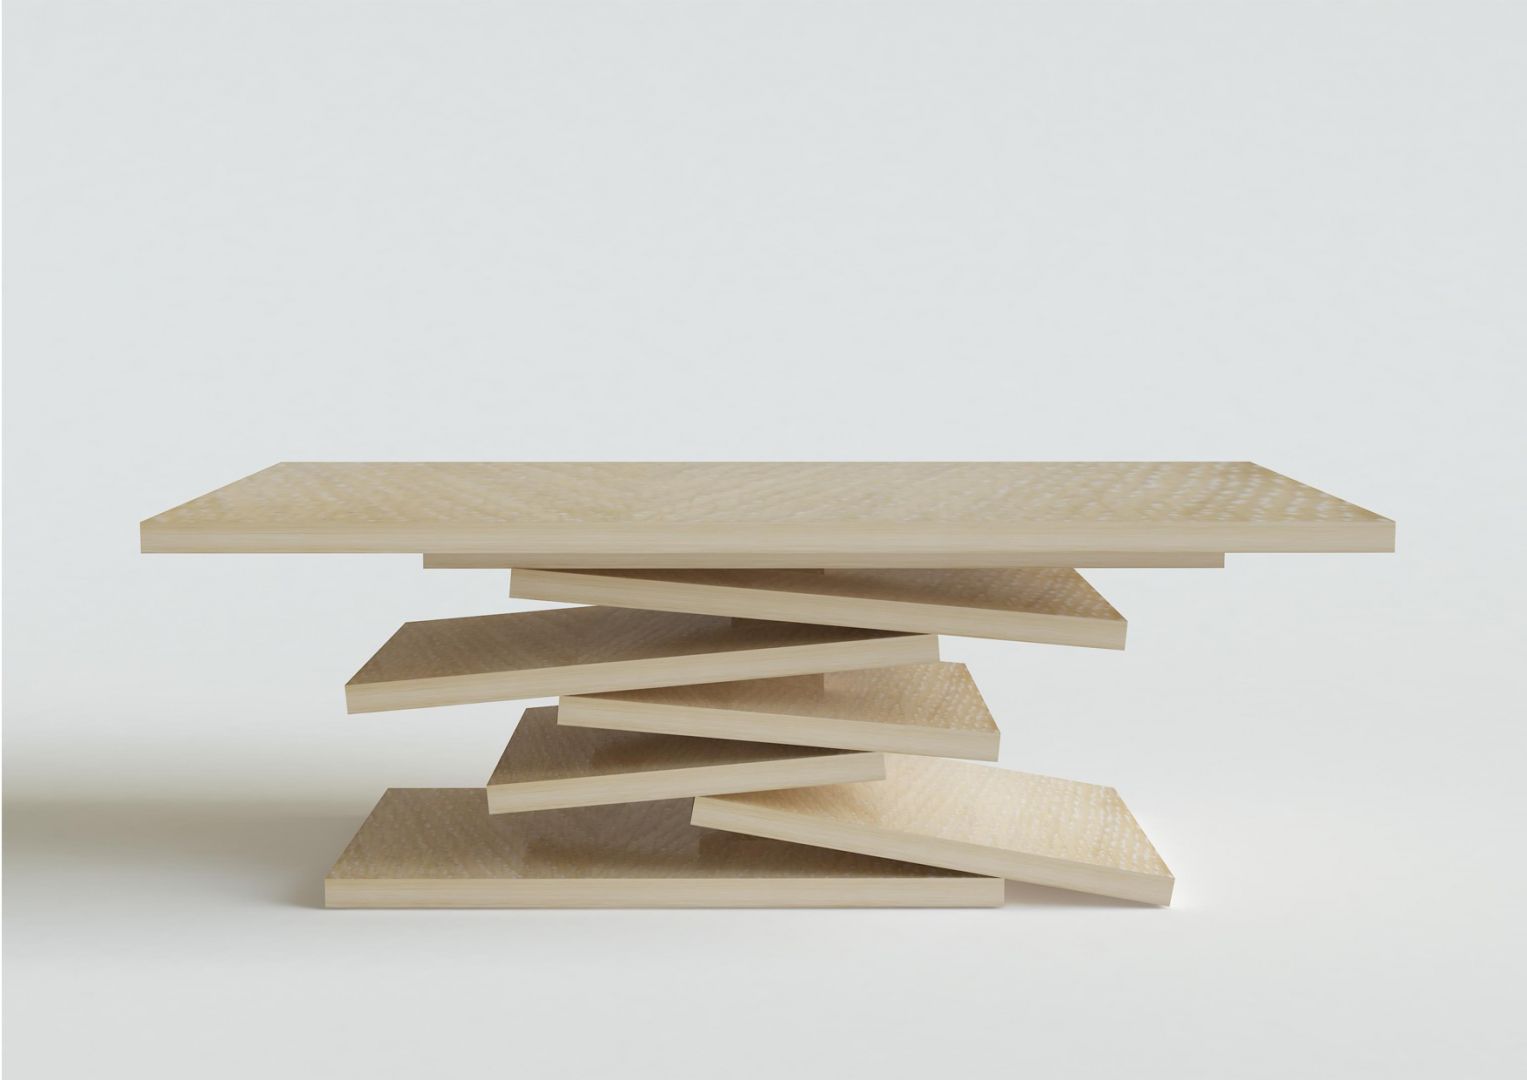 Drewniany stolik zaprojektowany przez Iwonę Kosicką
Fot. Archiwum projektantki